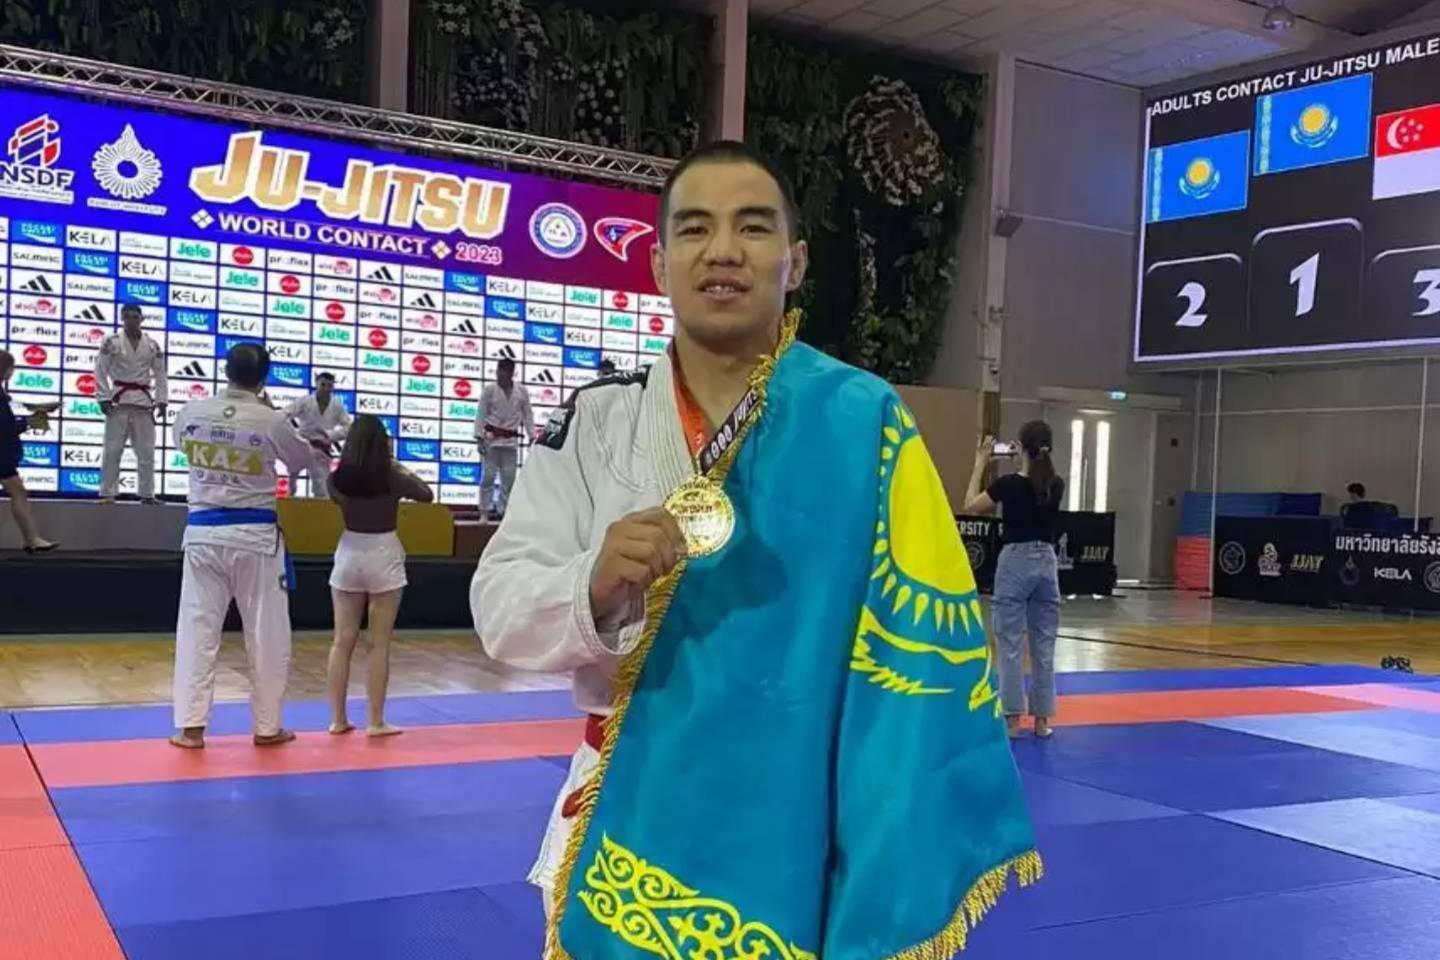 Новости спорта / Новости спорта в мире и Казахстане / Казахстанский спортсмен стал чемпионом мира по джиу-джитсу